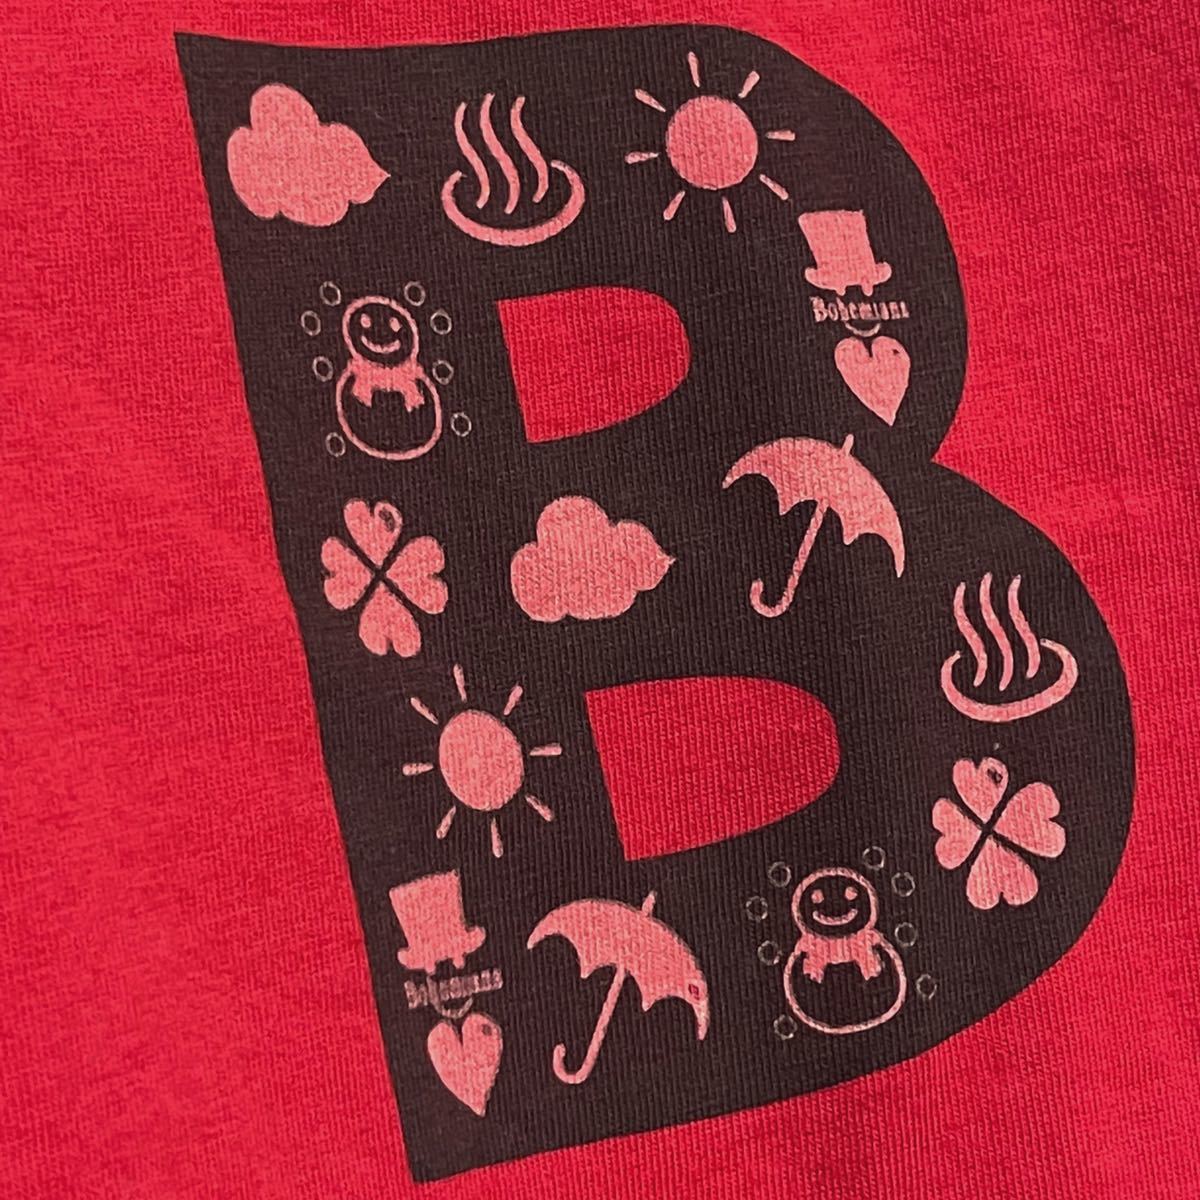 ボヘミアンズ Bohemians ★ Tシャツ ロゴ 天気 半袖トップス 赤レッド系 カットソー レディース メンズ 小さいサイズ アウトドア ブランド